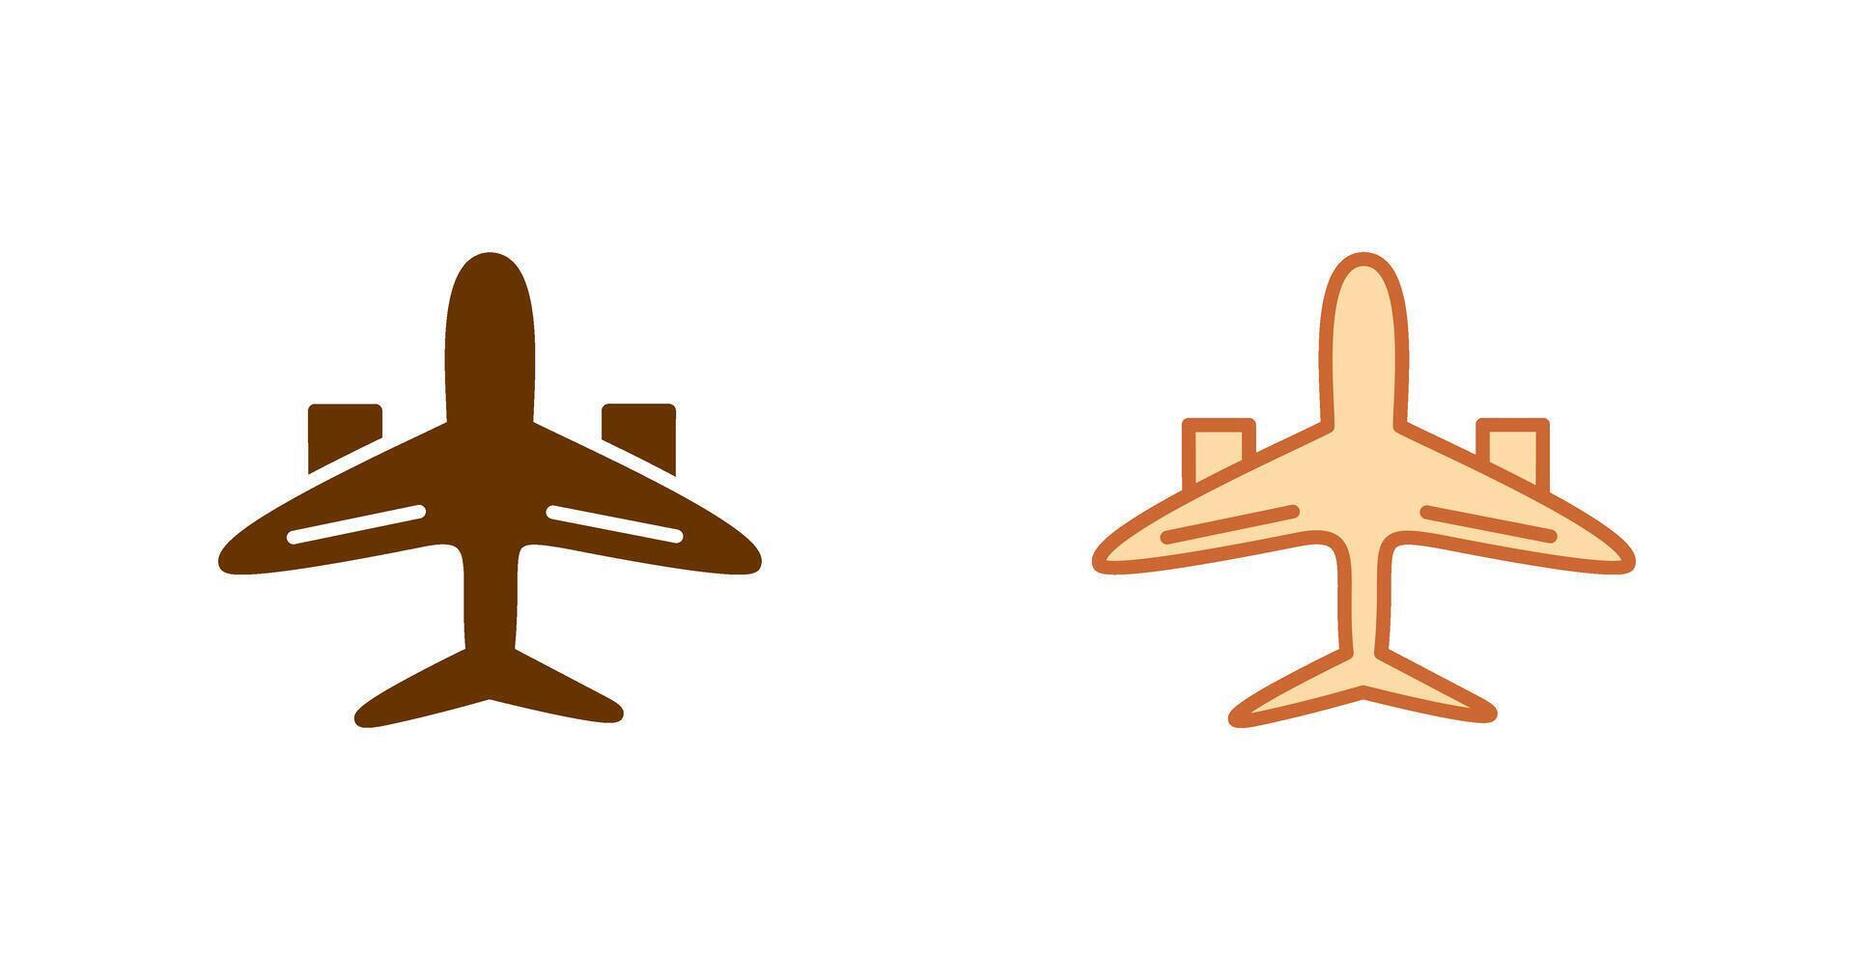 Flugzeug Symbol Design vektor